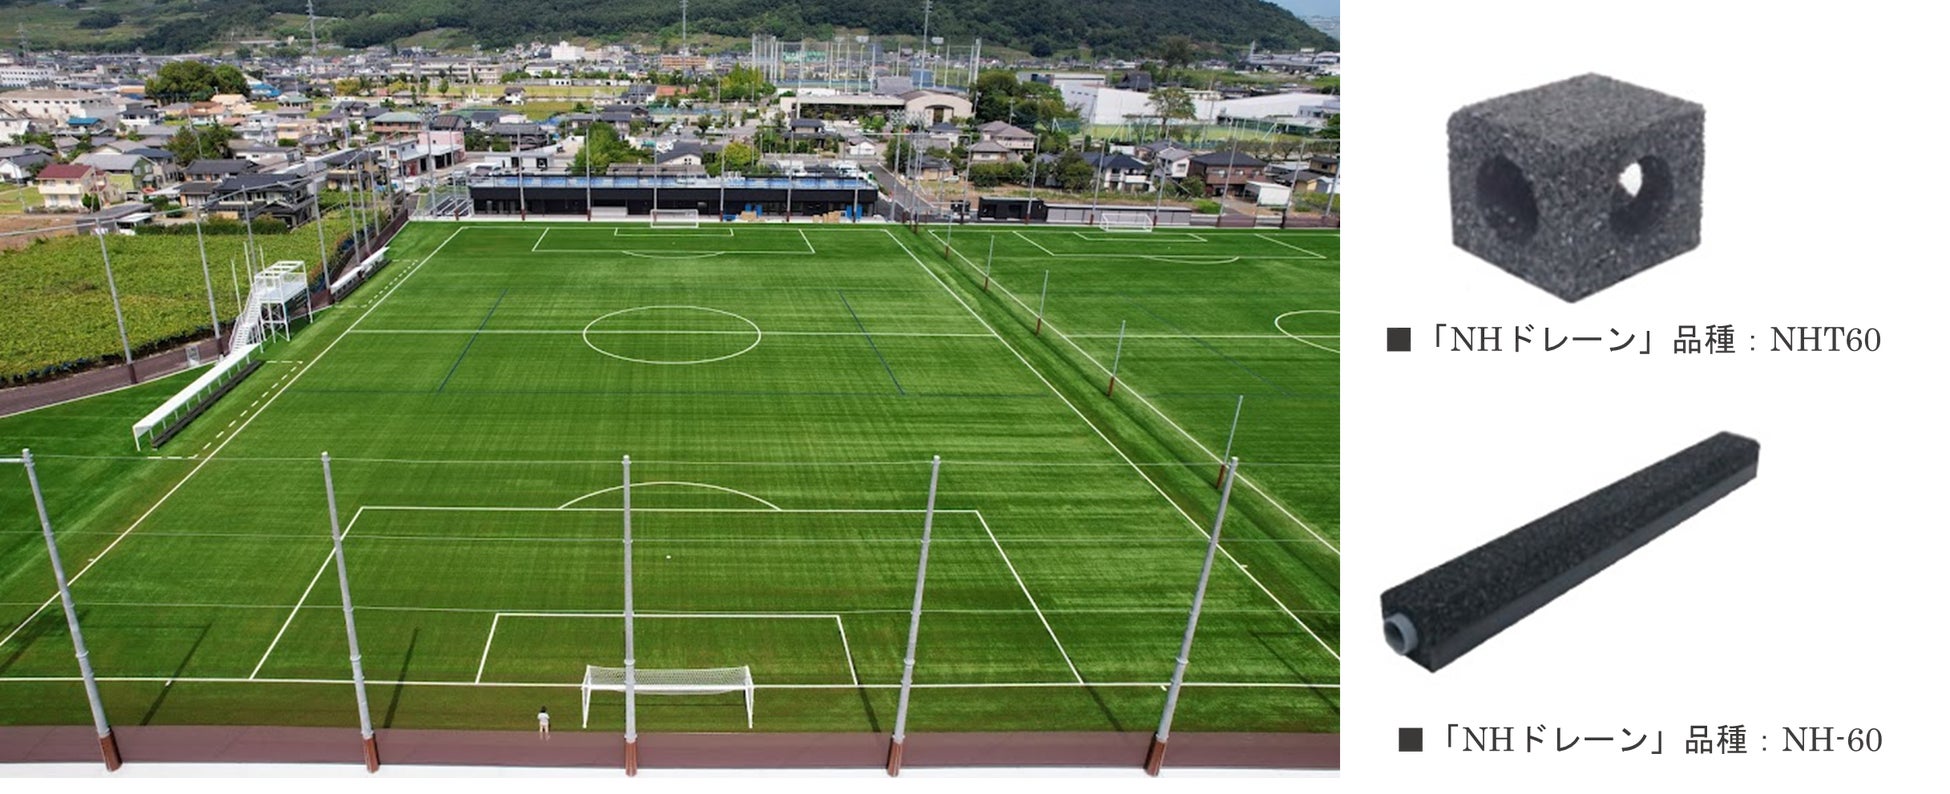 人工芝グラウンド用高速排水材「NHドレーン」、　FIFA規格の山梨学院大学 川田ツインサッカー場に採用、雨天時の排水に期待